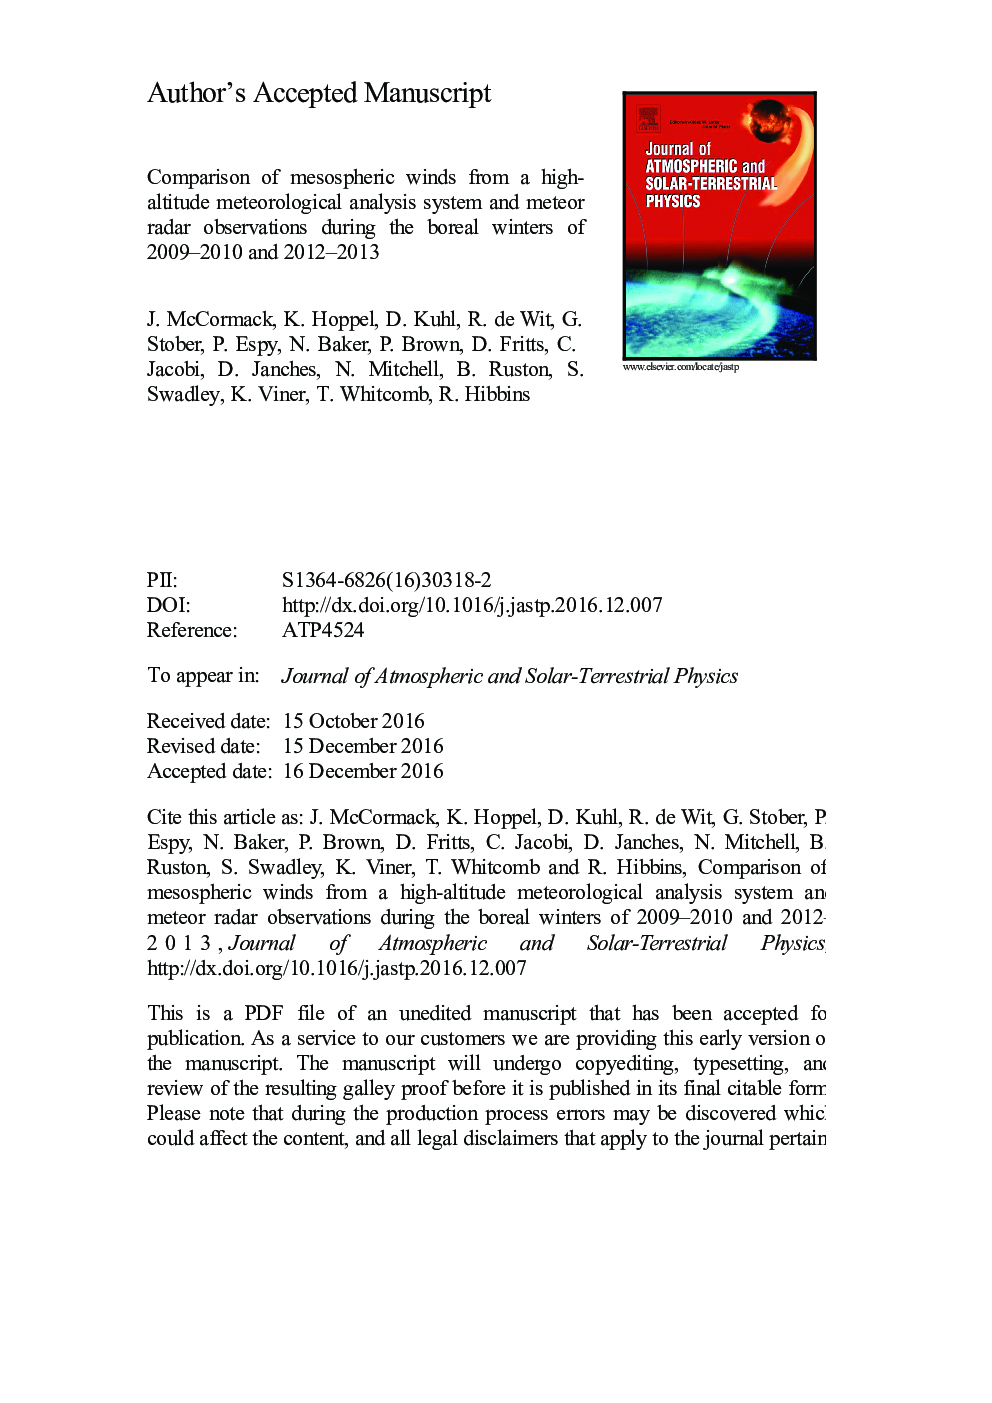 مقایسه بادهای مأوسف از یک سیستم تحلیل هواشناسی ارتفاع بالا و مشاهدات رادارهای شهاب سنگ در زمستان های بئرین در سال های 2009-2010 و 2012-2013 